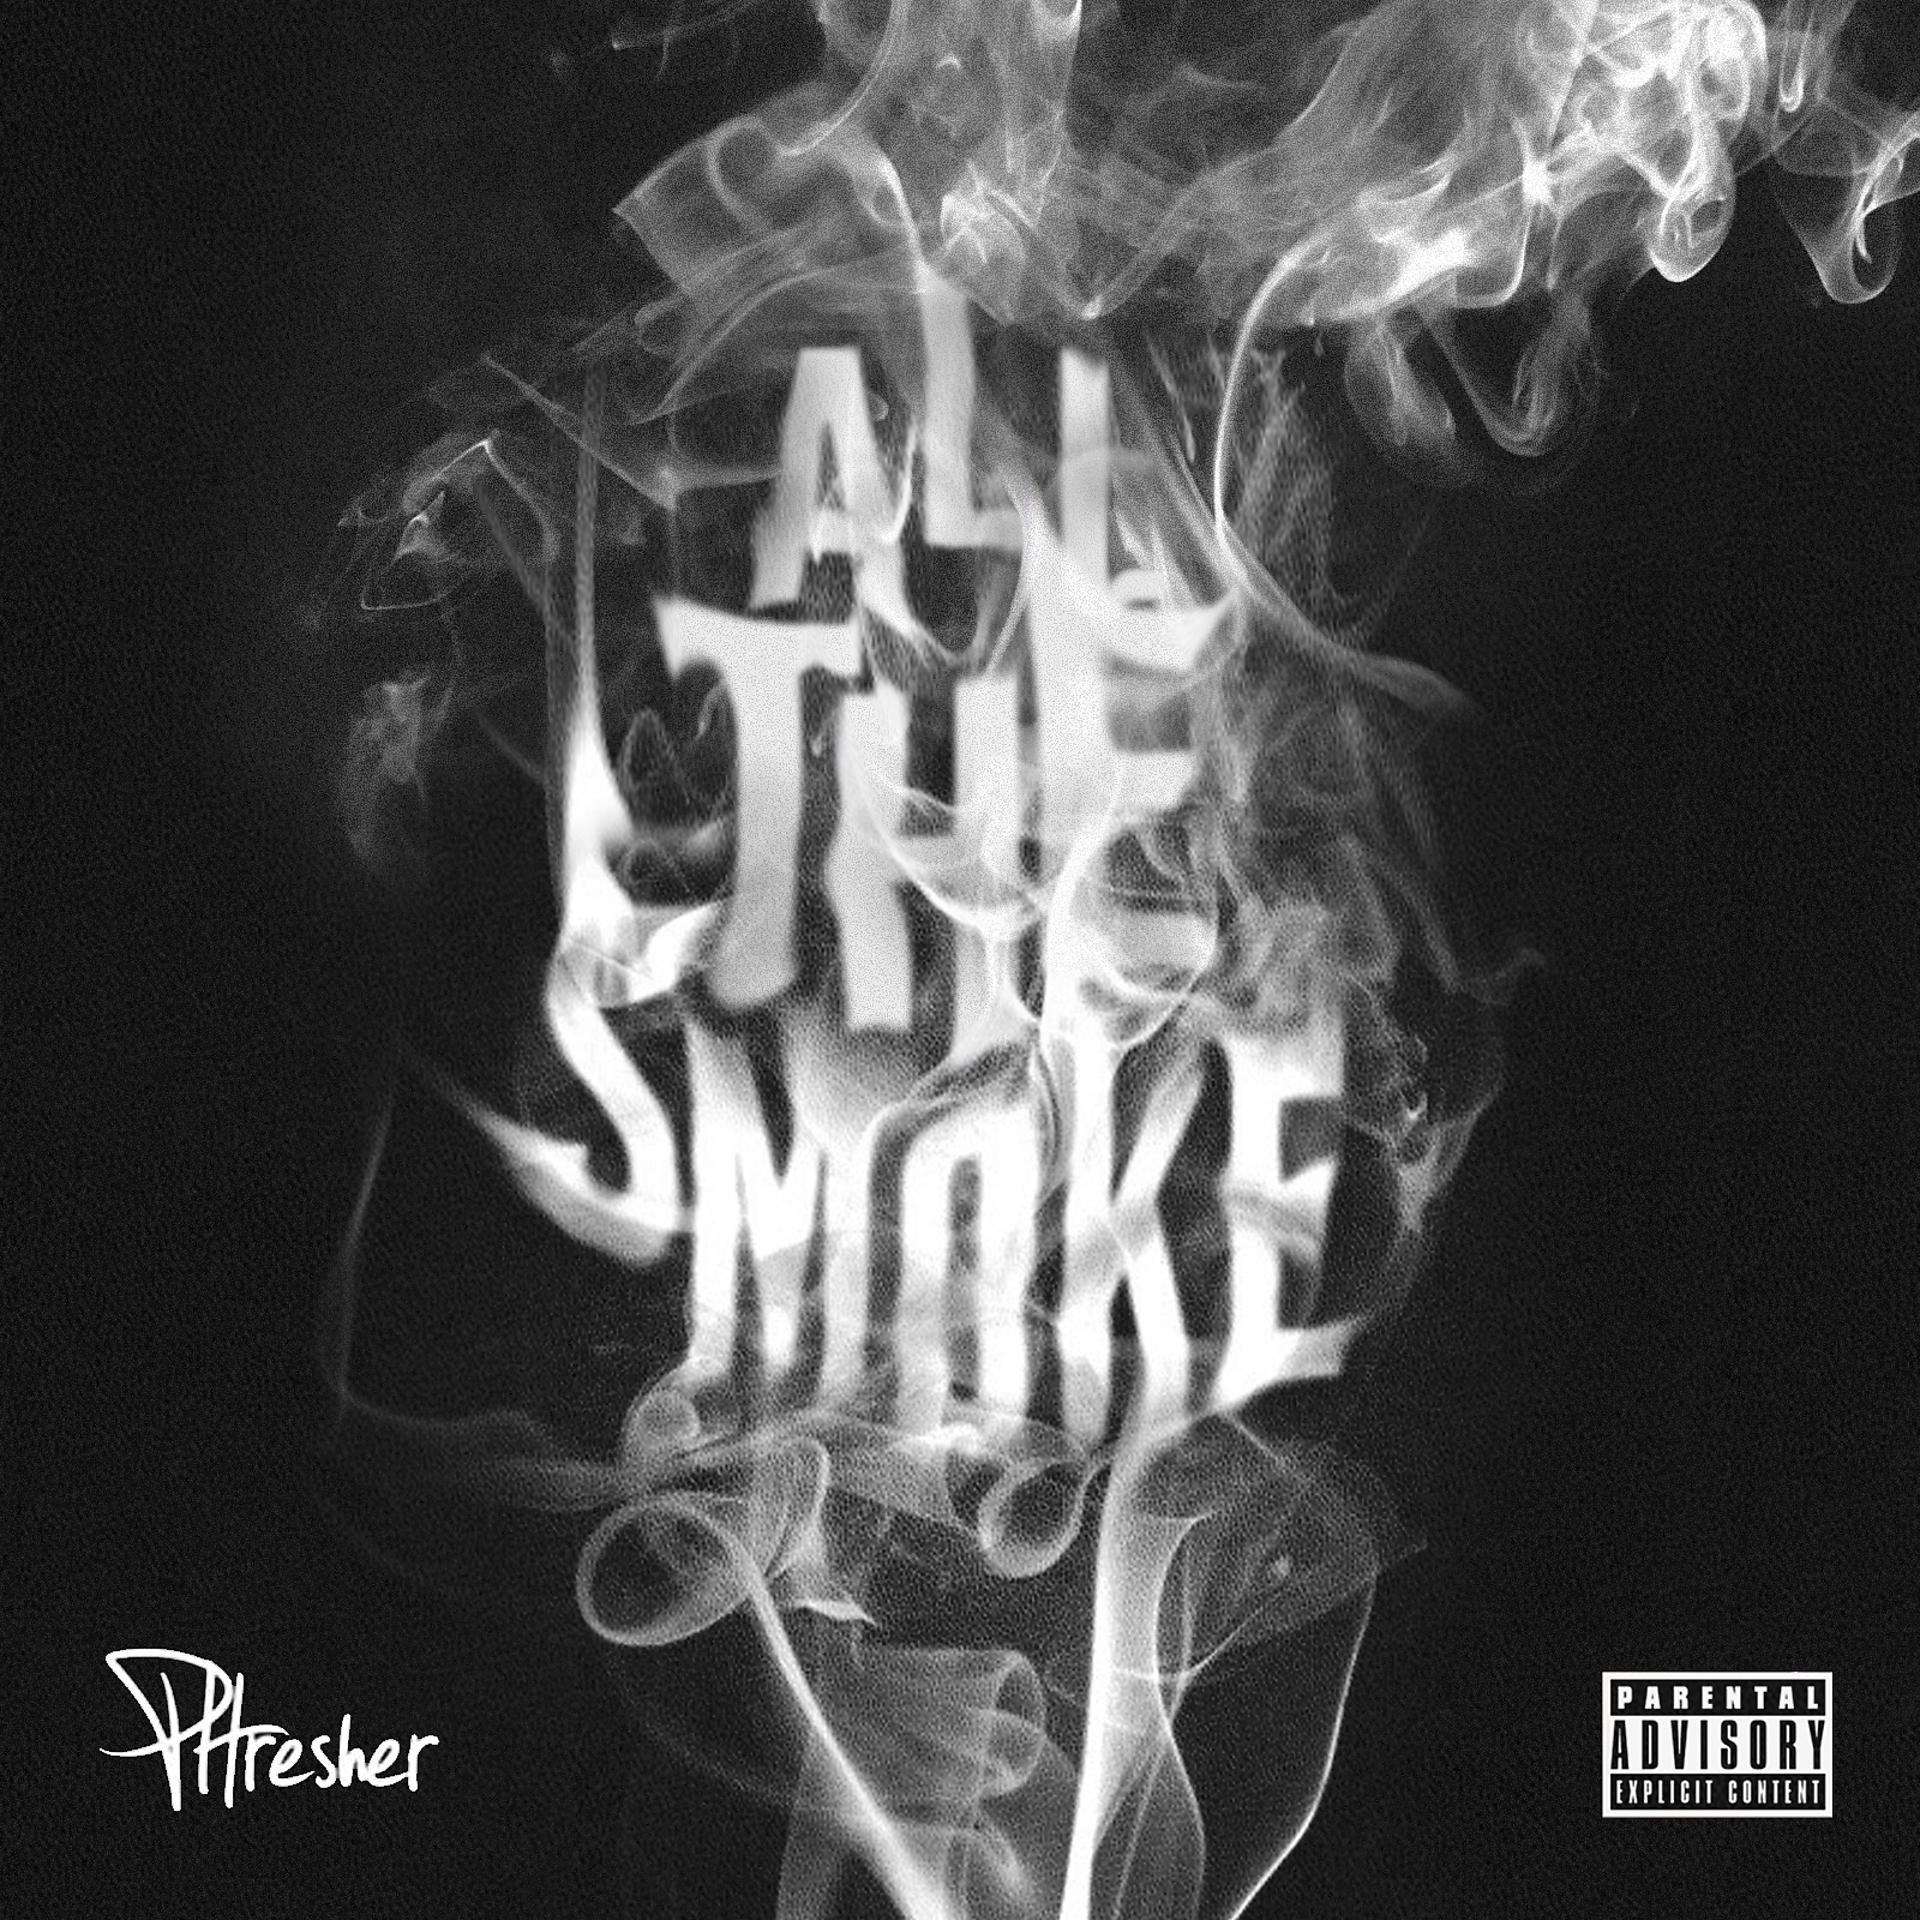 Постер альбома All The Smoke